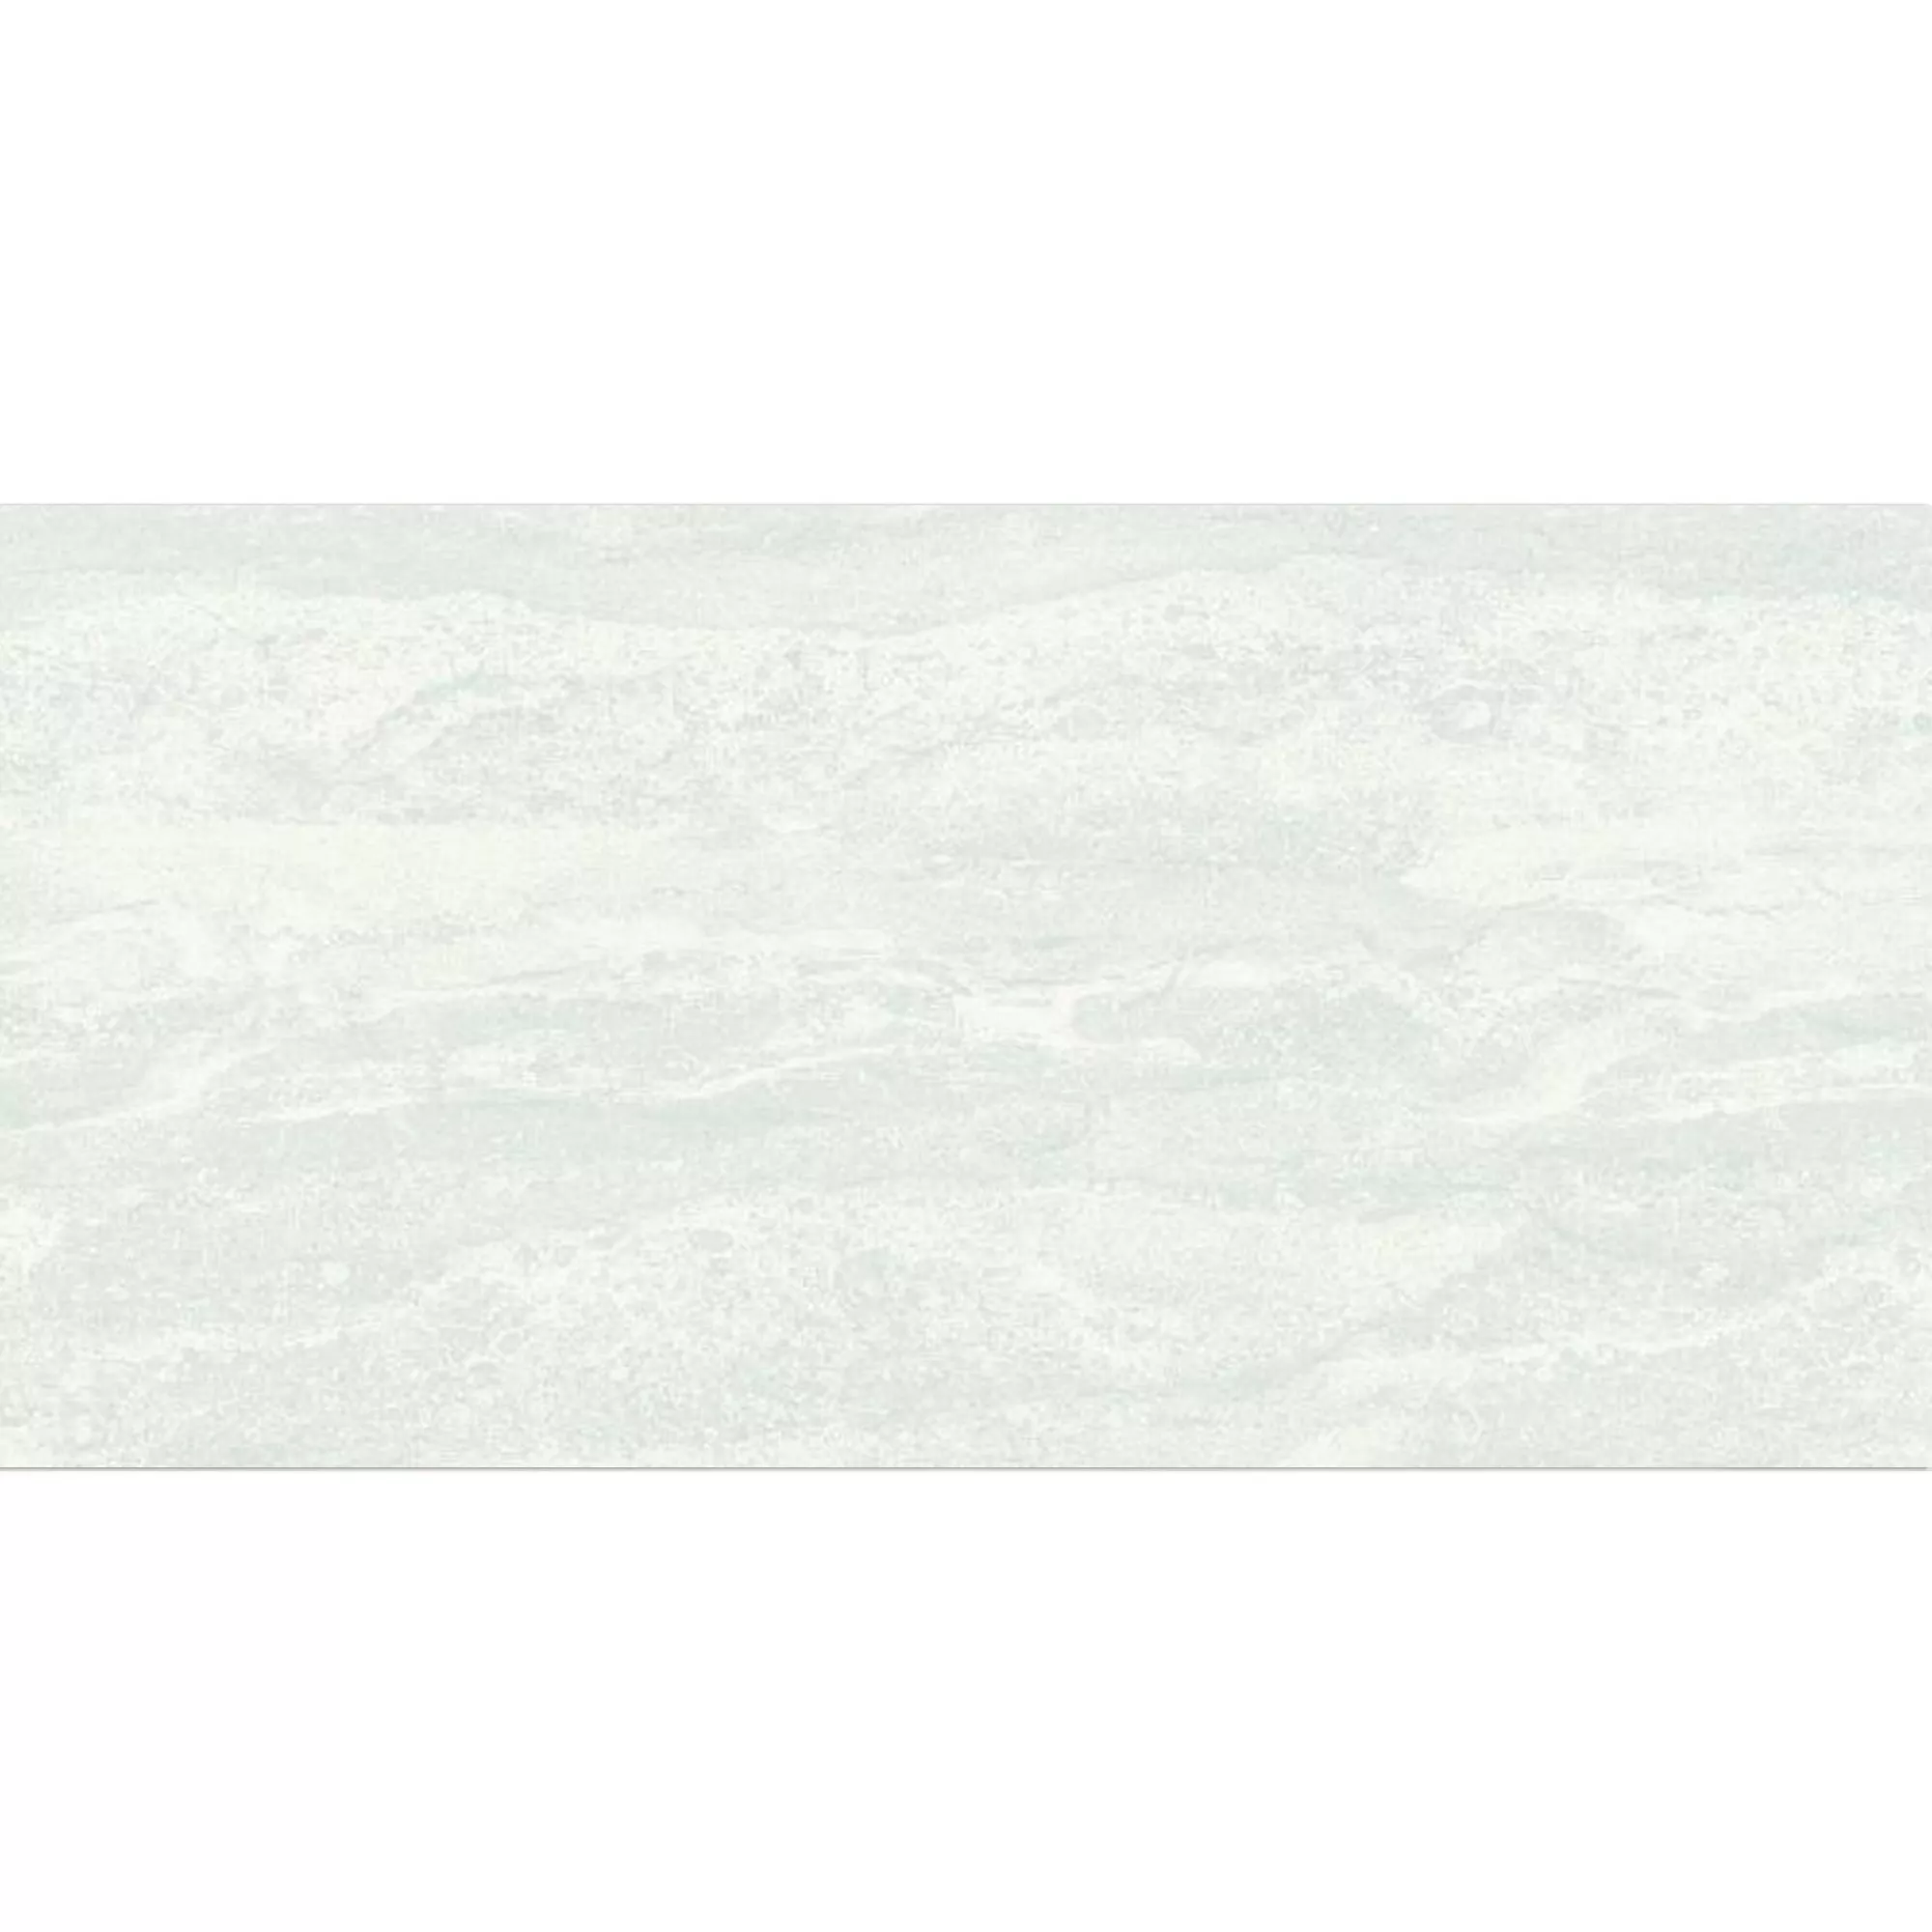 Πλακάκι Tοίχου Bellinzona Kρέμα Δομημένος 30x60cm